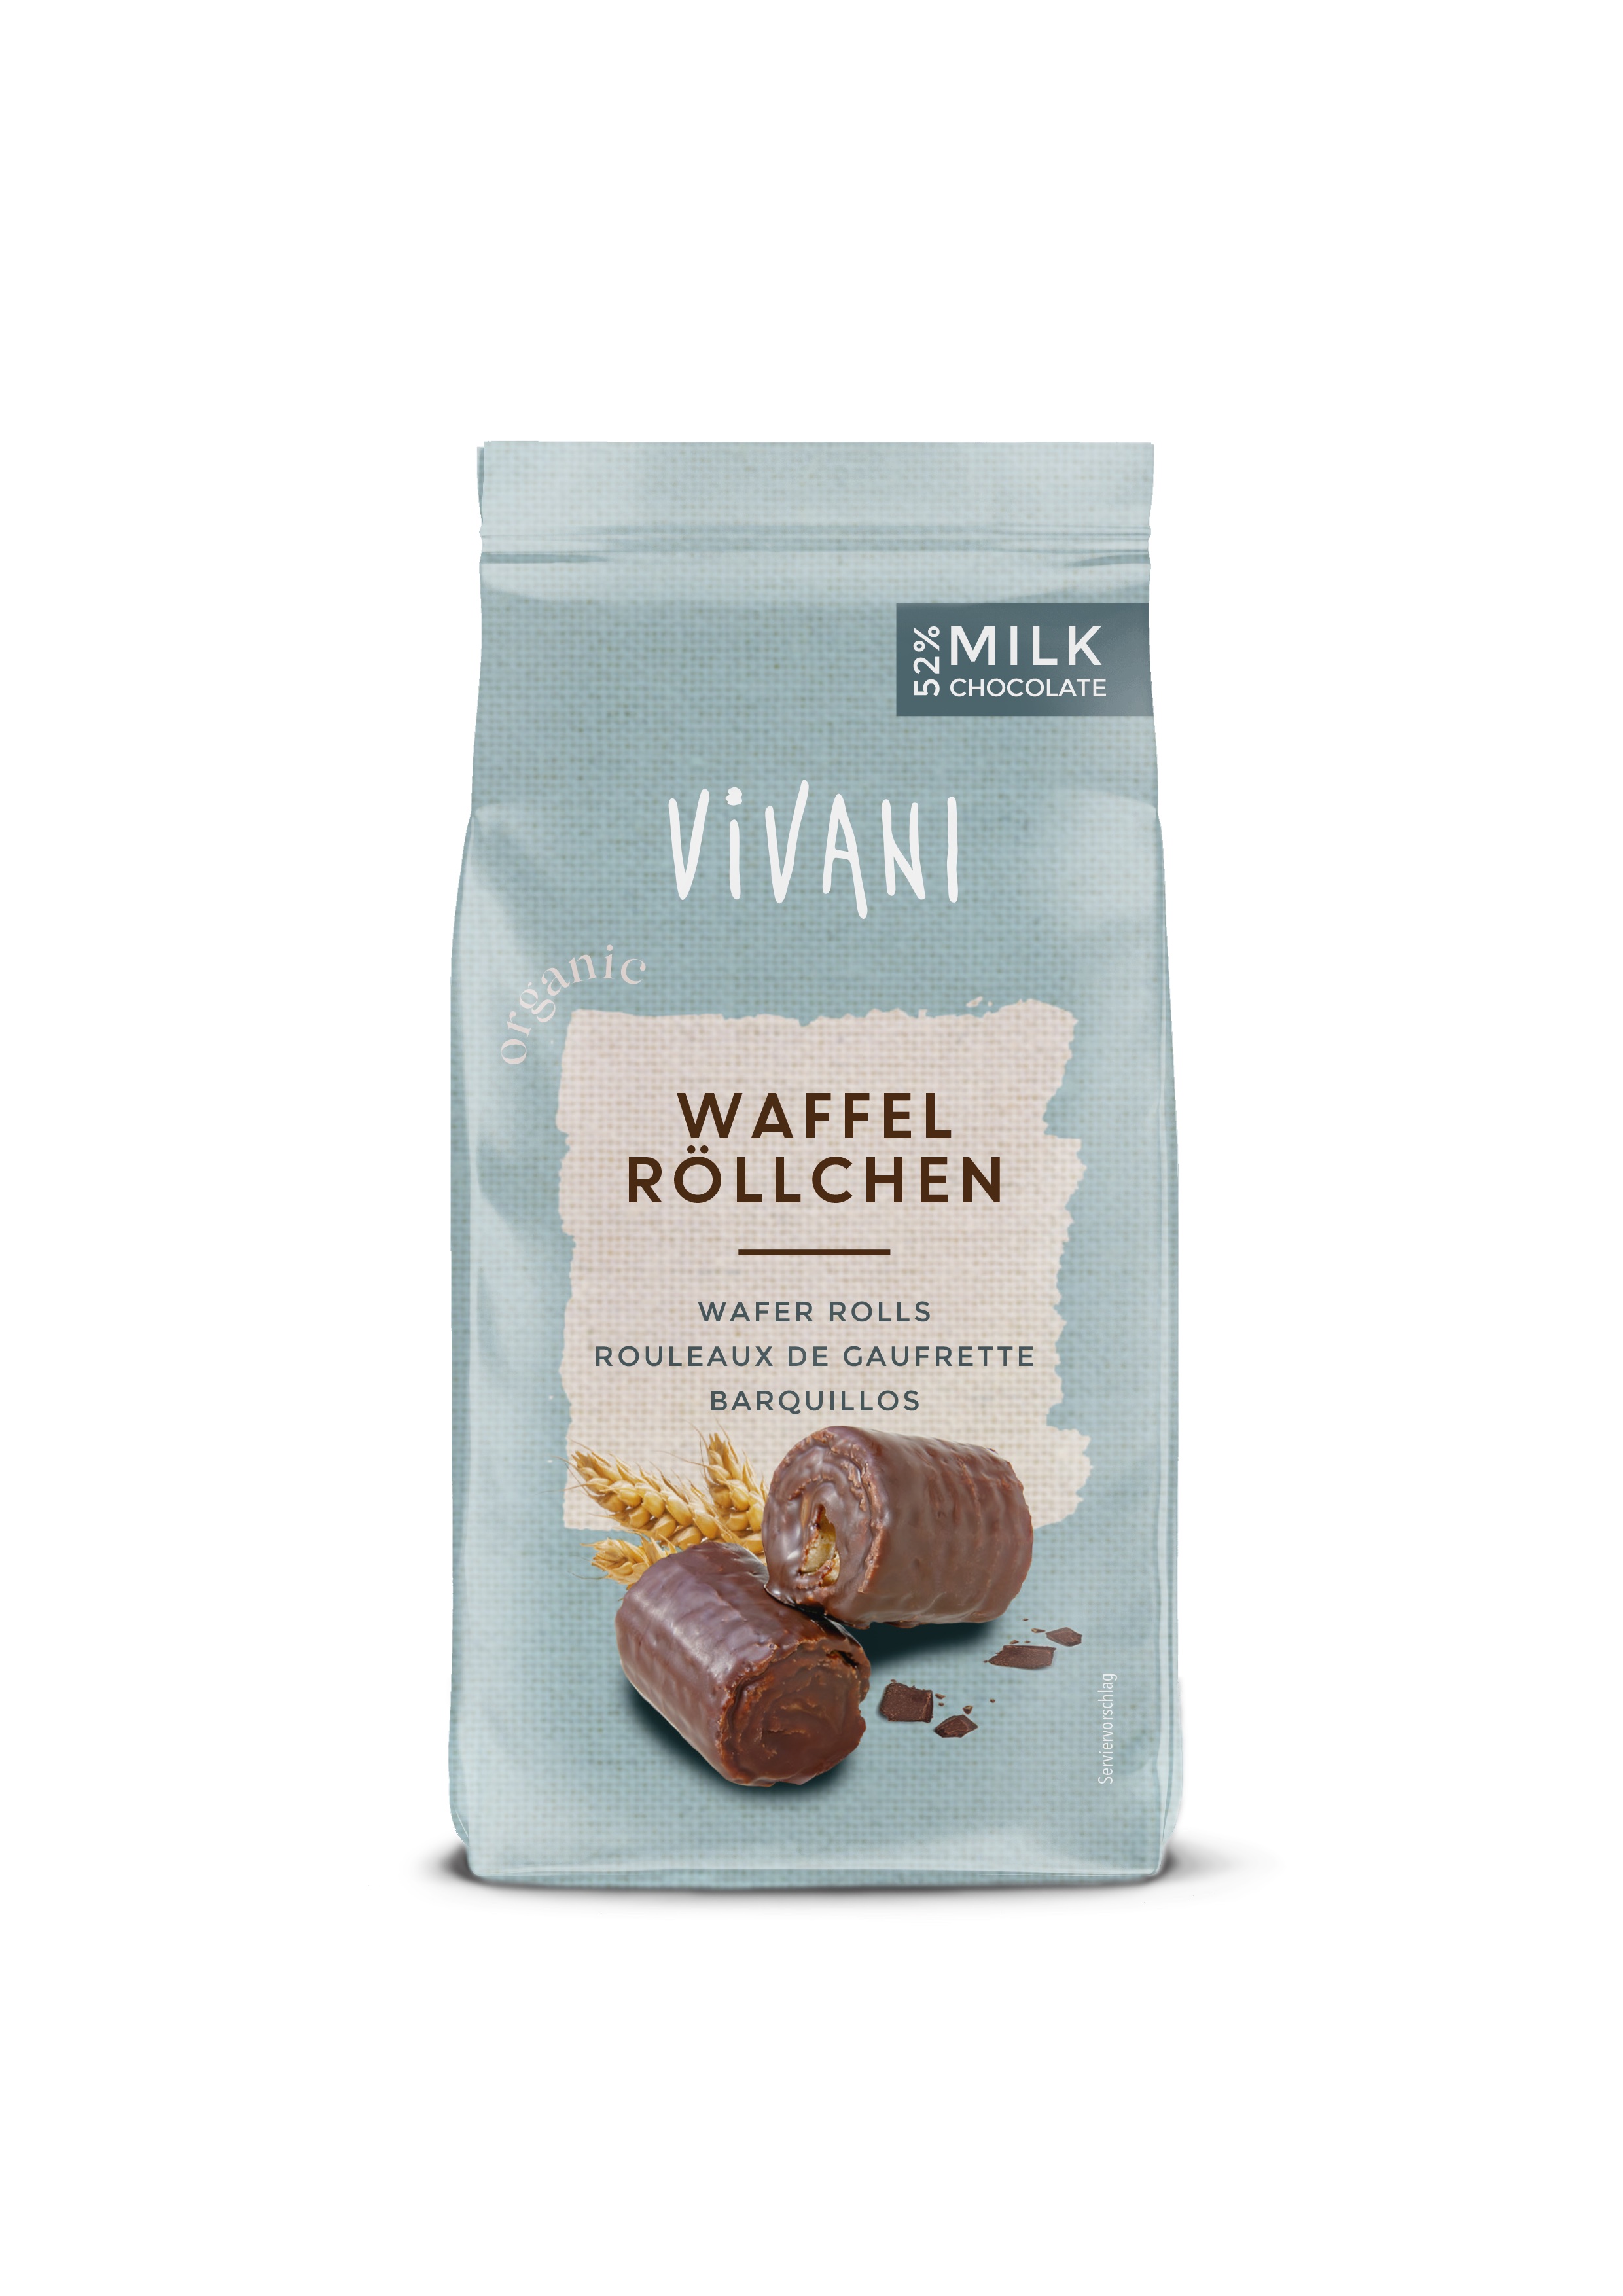 Vivani Wafer rolls melkchocolade bio 125g